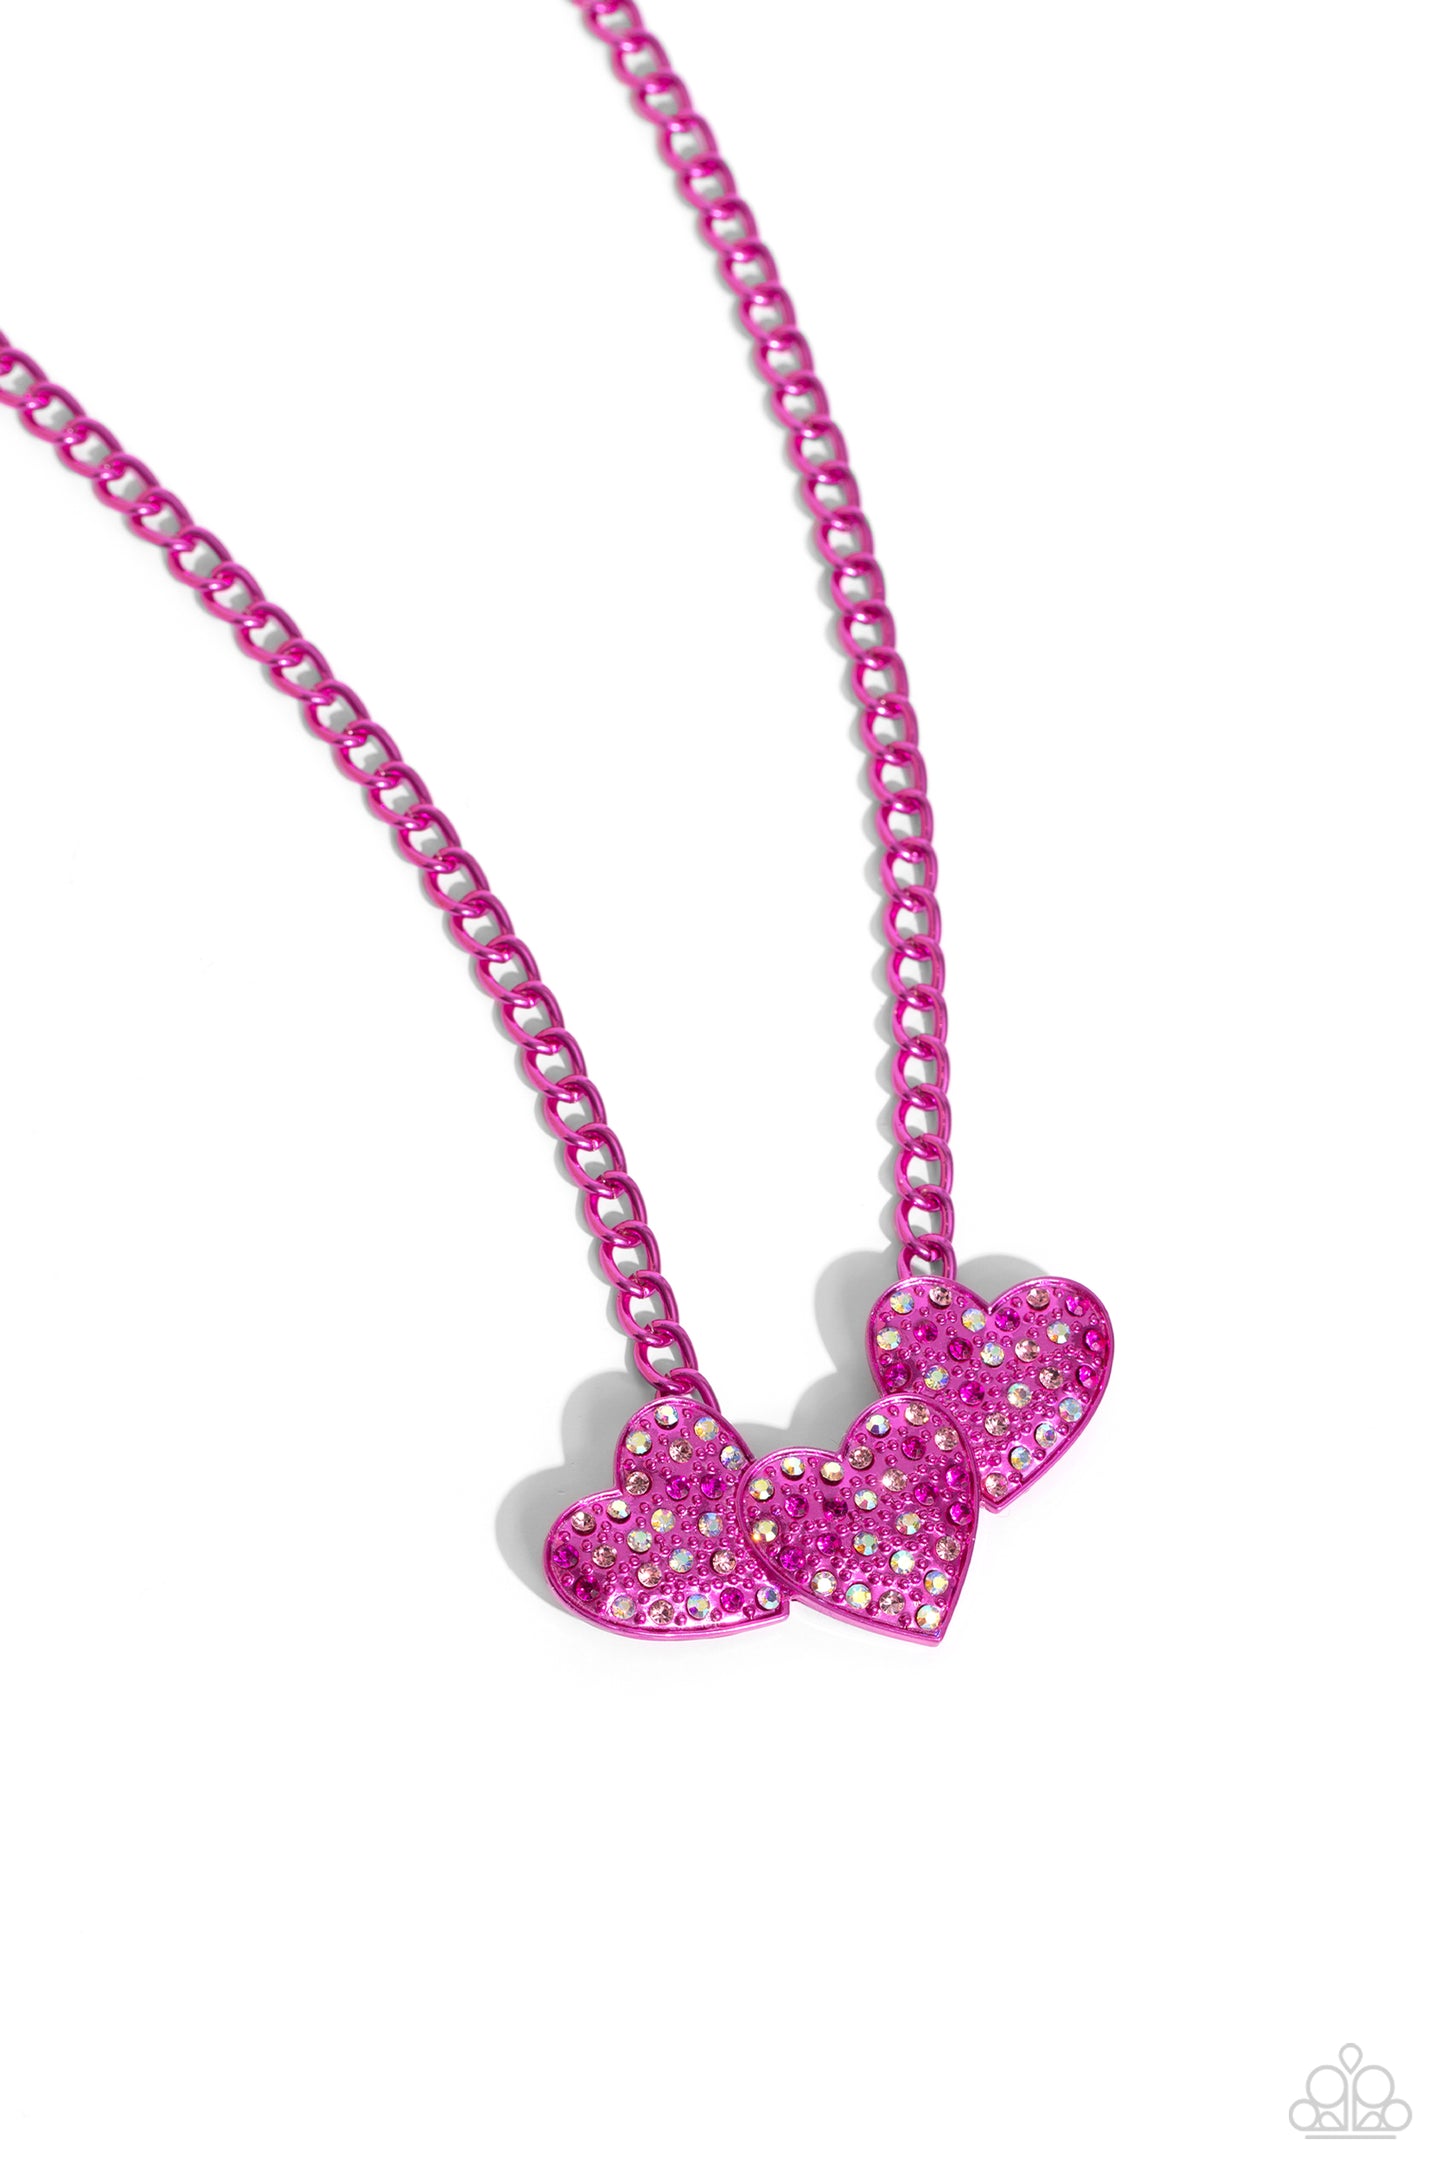 Paparazzi Low-Key Lovestruck - Pink Necklace and Lovestruck Lineup - Pink Bracelet Set